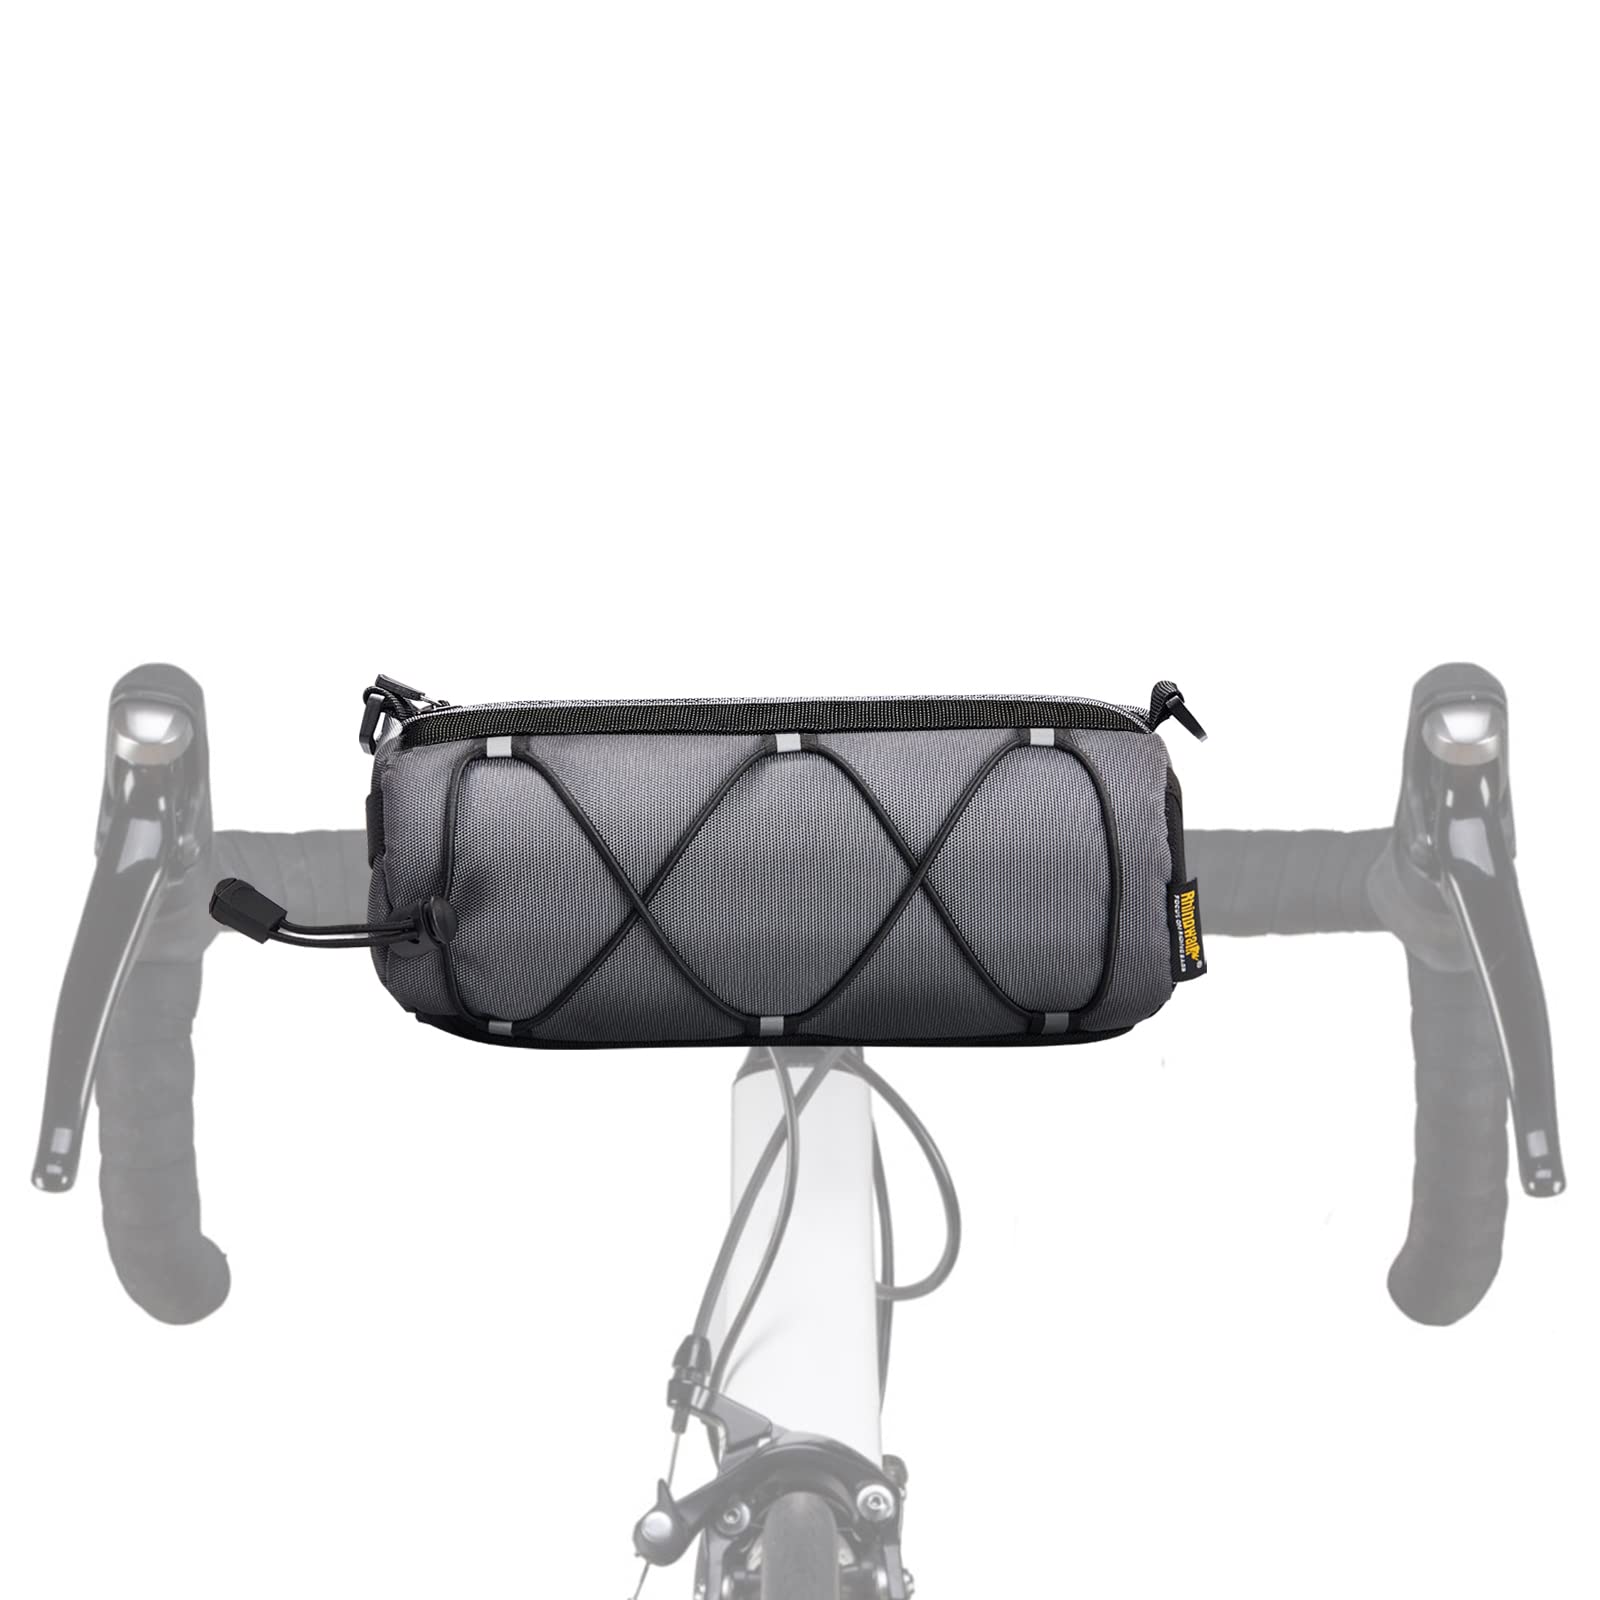 JOLY FANG Lenkertasche Fahrrad, 2 in1 Fahrradtasche Lenker mit Schultergurt - geeignet als Lenkertasche, Umhängetasche (Grau) von JOLY FANG